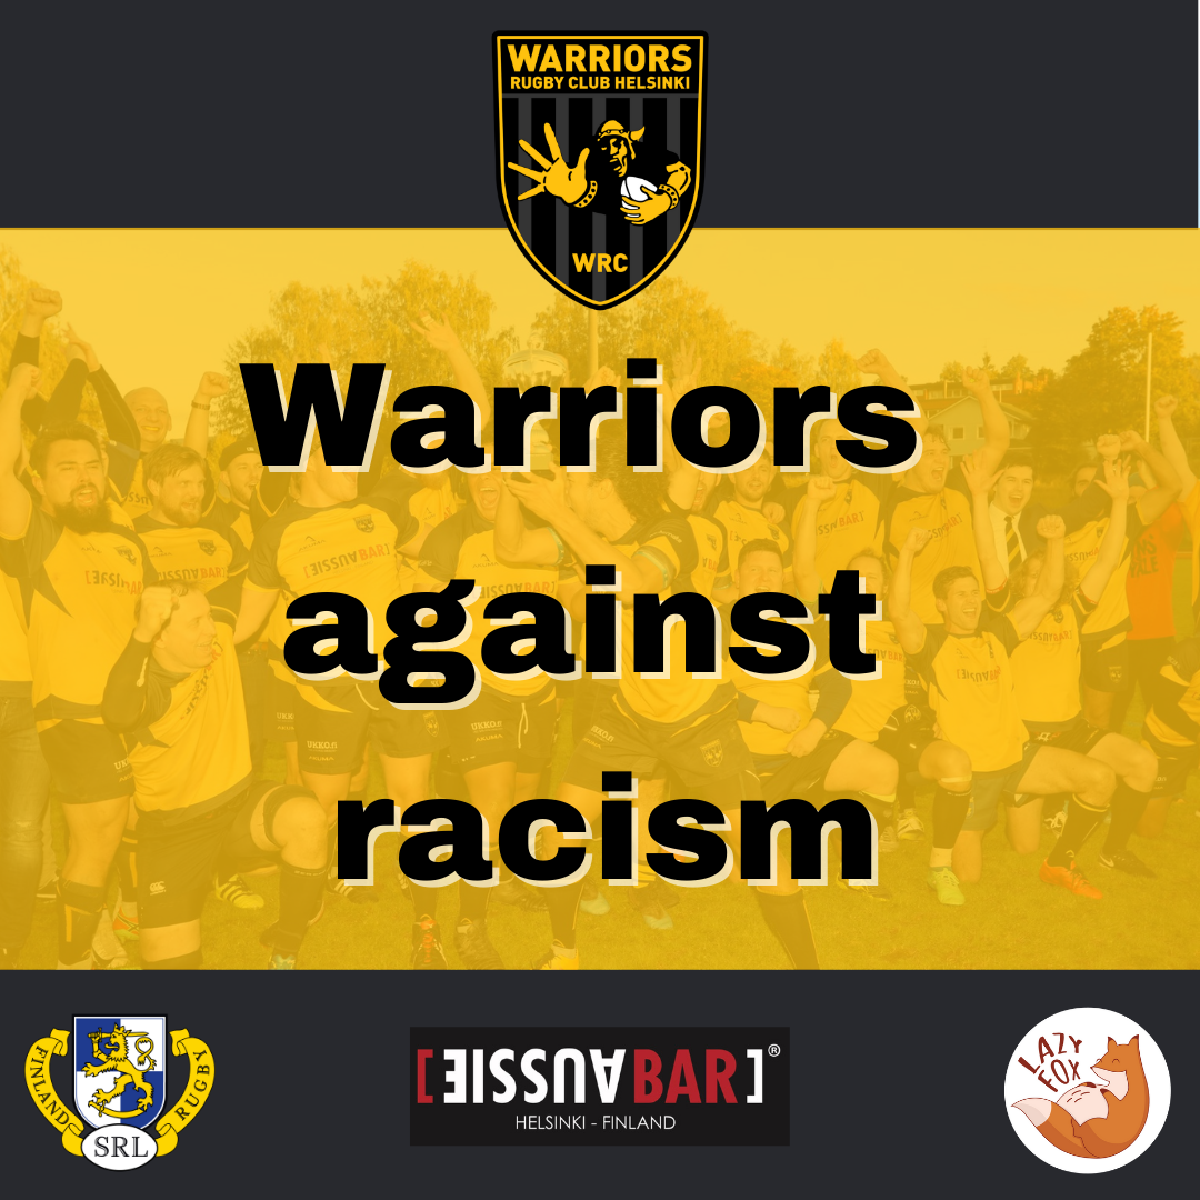 Warriors take part in week against racism